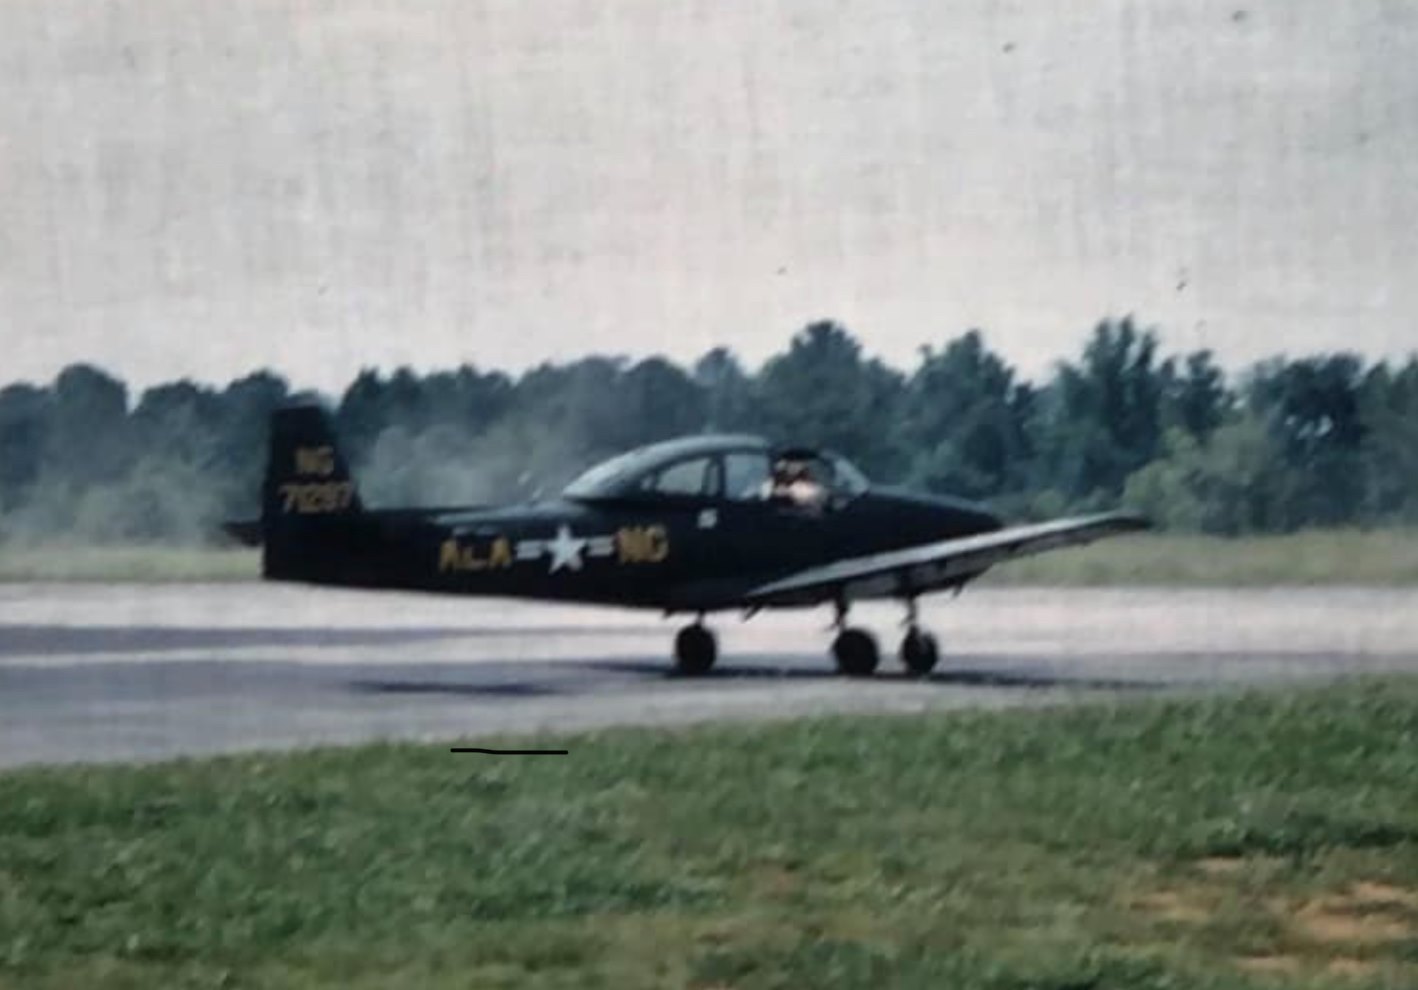 L-17 aircraft